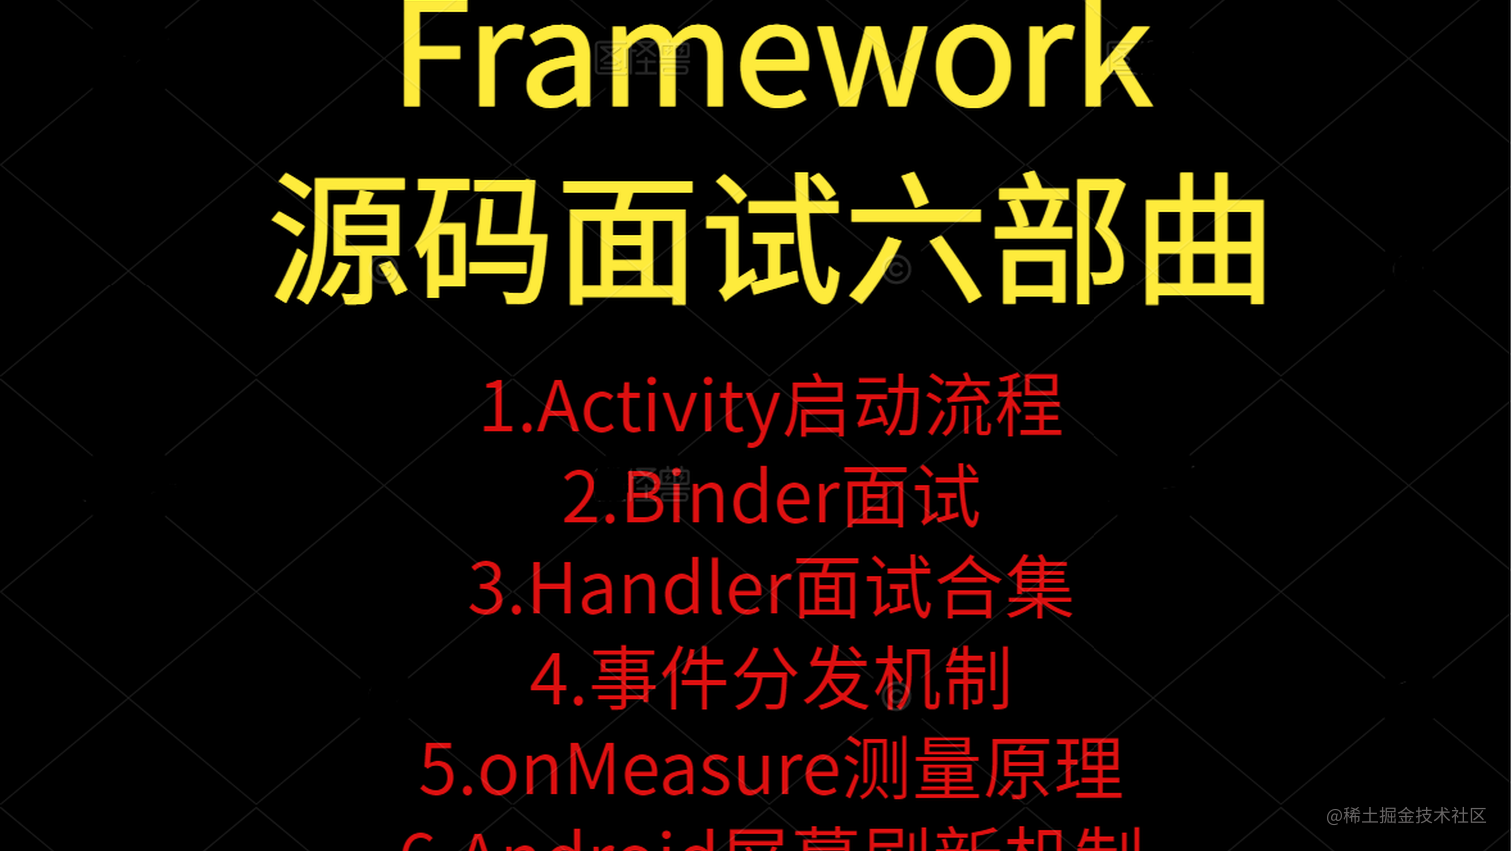 Framework源码面试六部曲:3.Handler面试集合